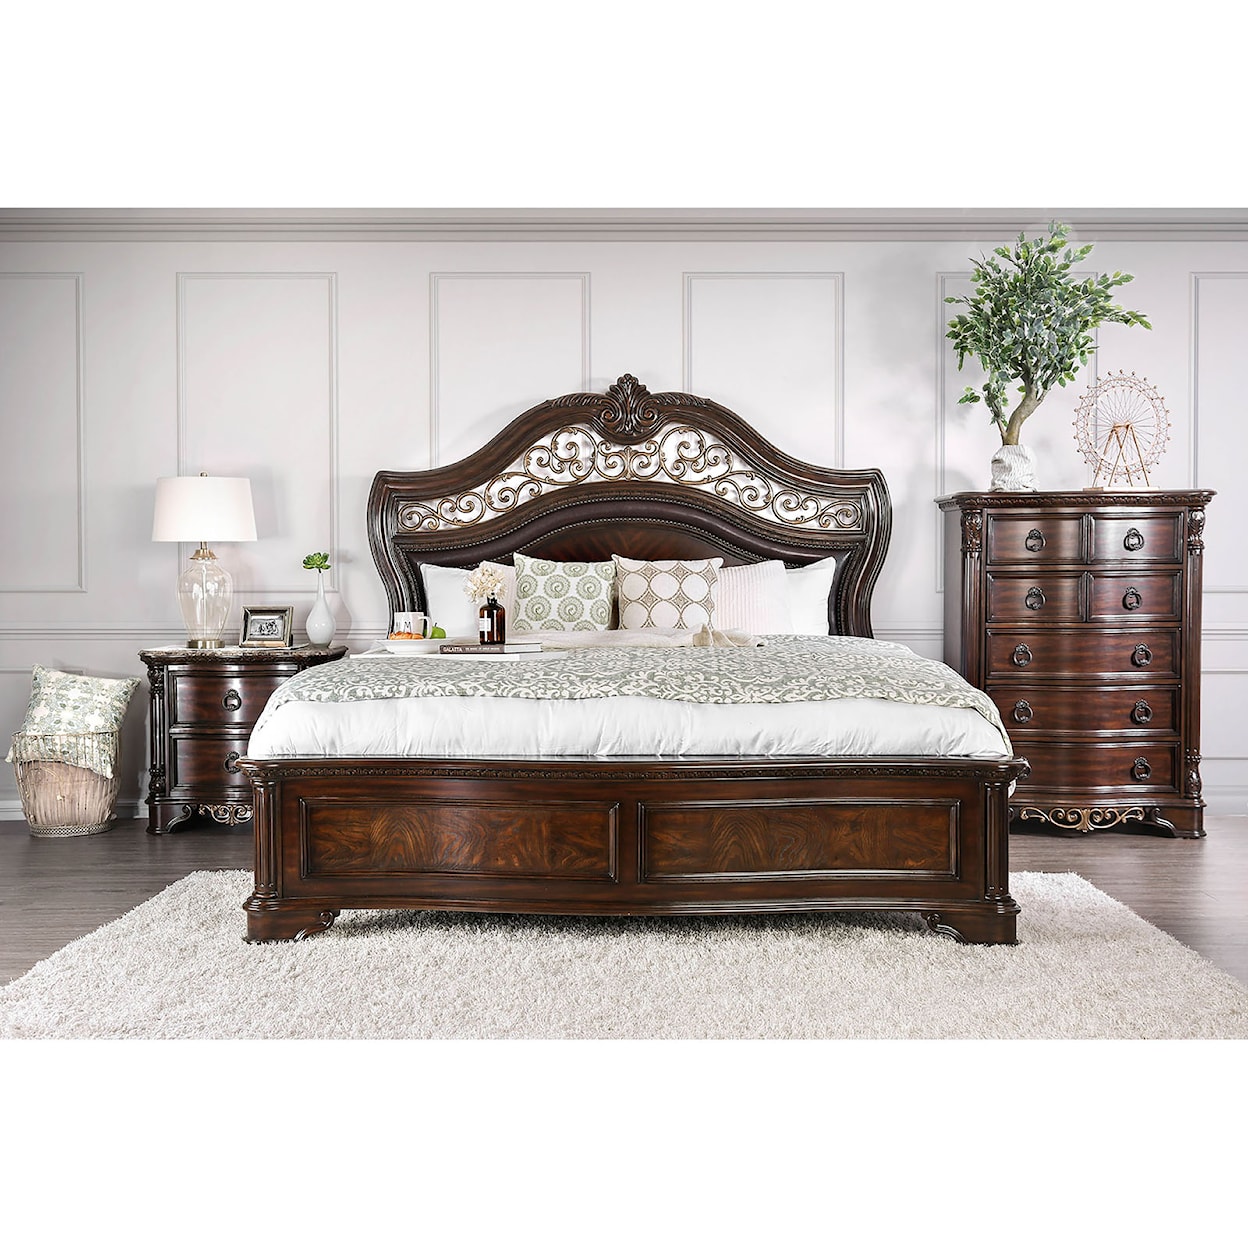 Furniture of America Menodora 5-Piece Queen Bedroom Set